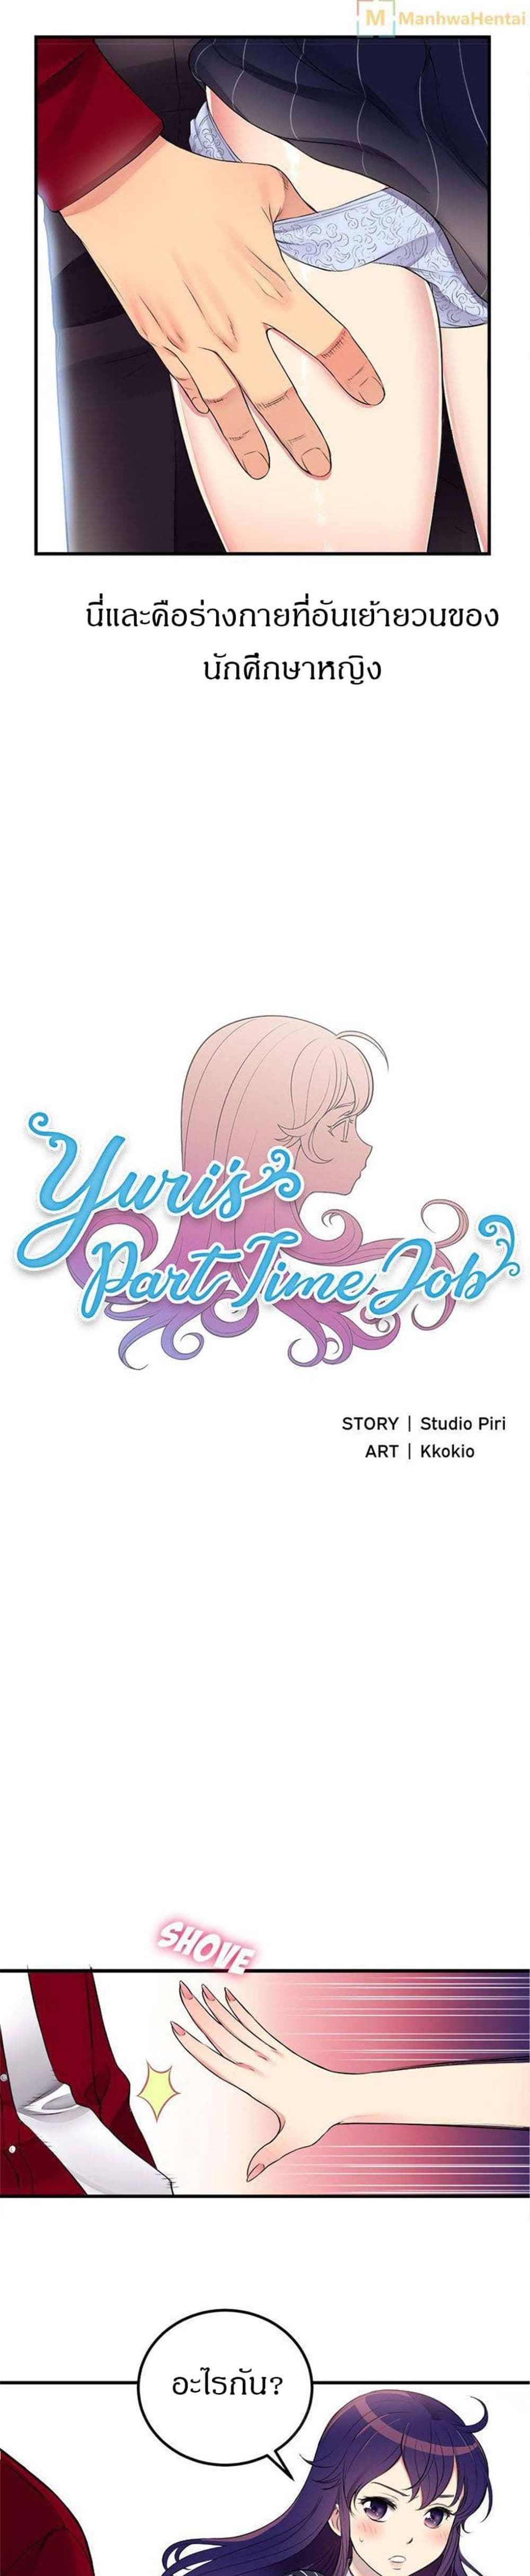 Yuri’s Part Time Job 3 (4)